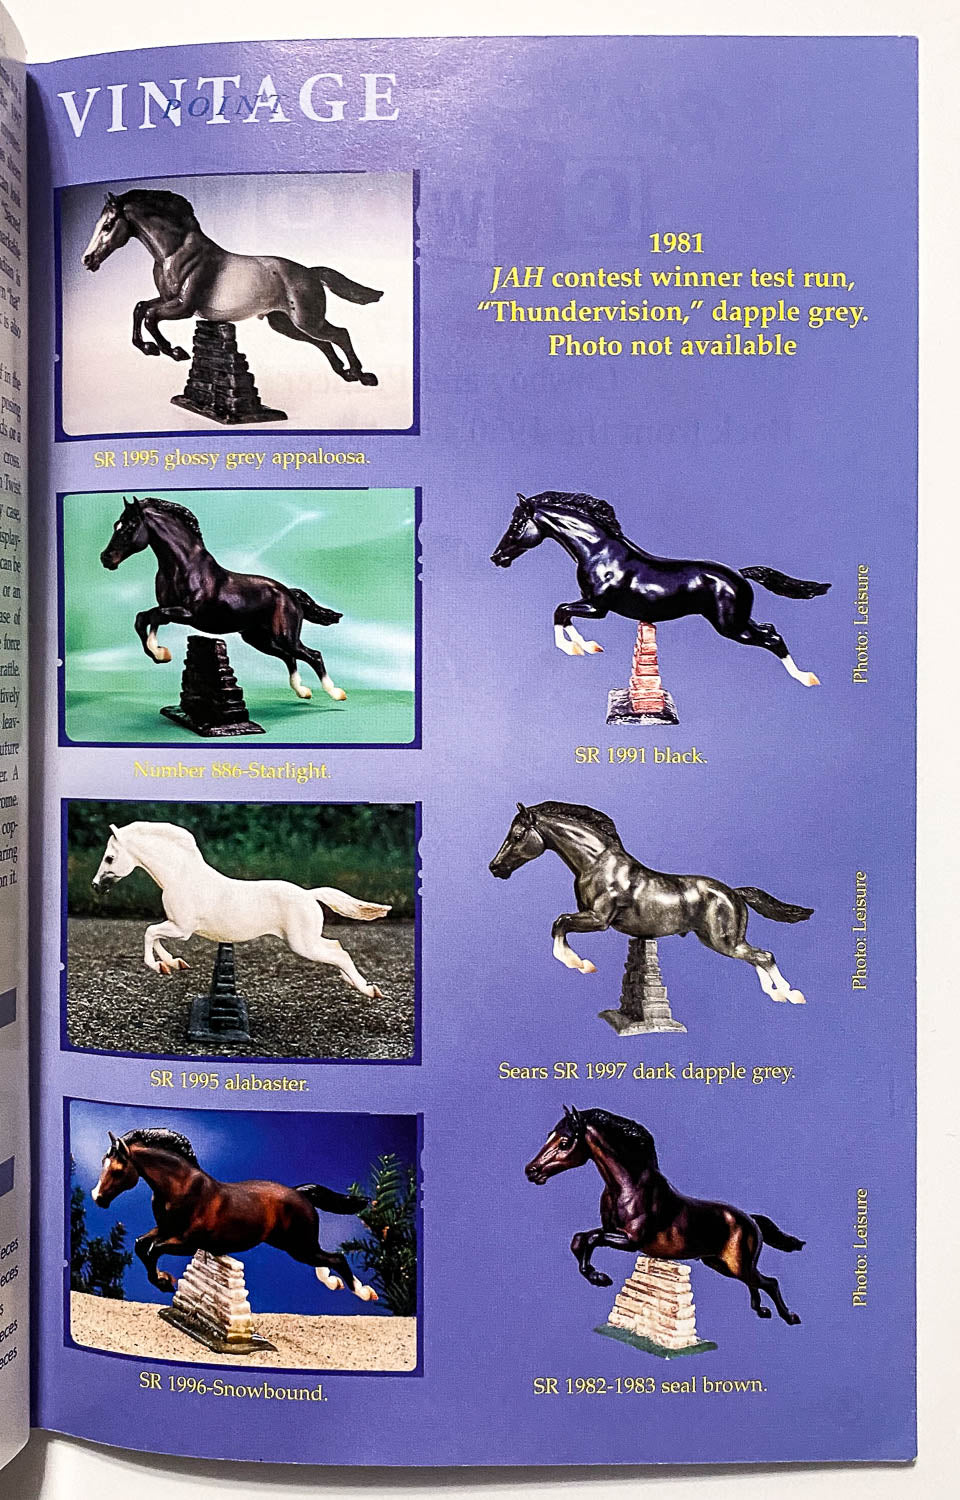 Just About Horses Magazine Vol. 25 No. 2, 1998 Mar/Apr